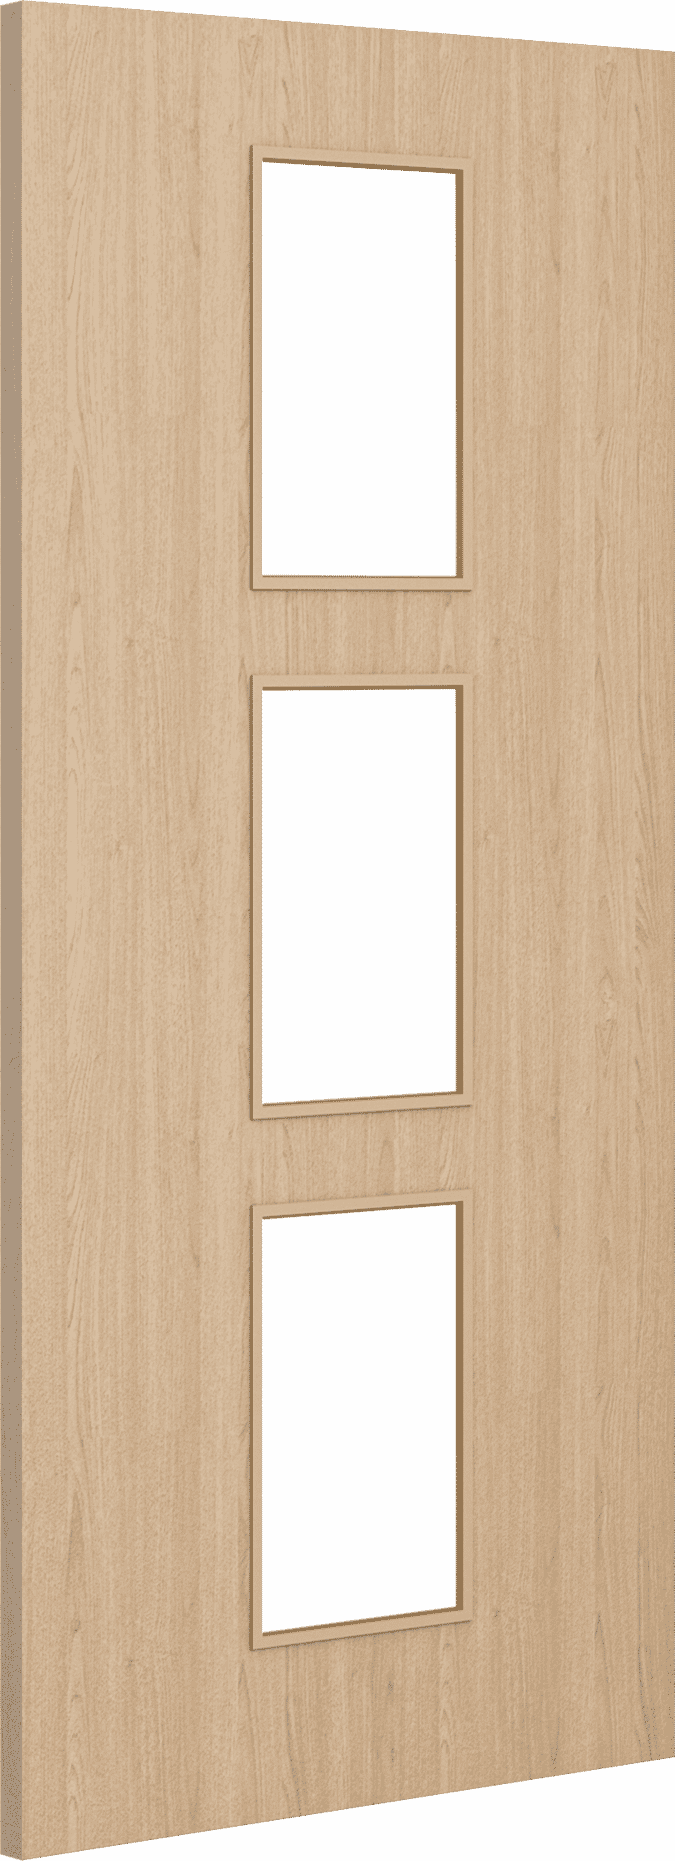 2040mm x 426mm x 44mm Architectural Oak 11 Clear Glazed - Prefinished FD30 Fire Door Blank